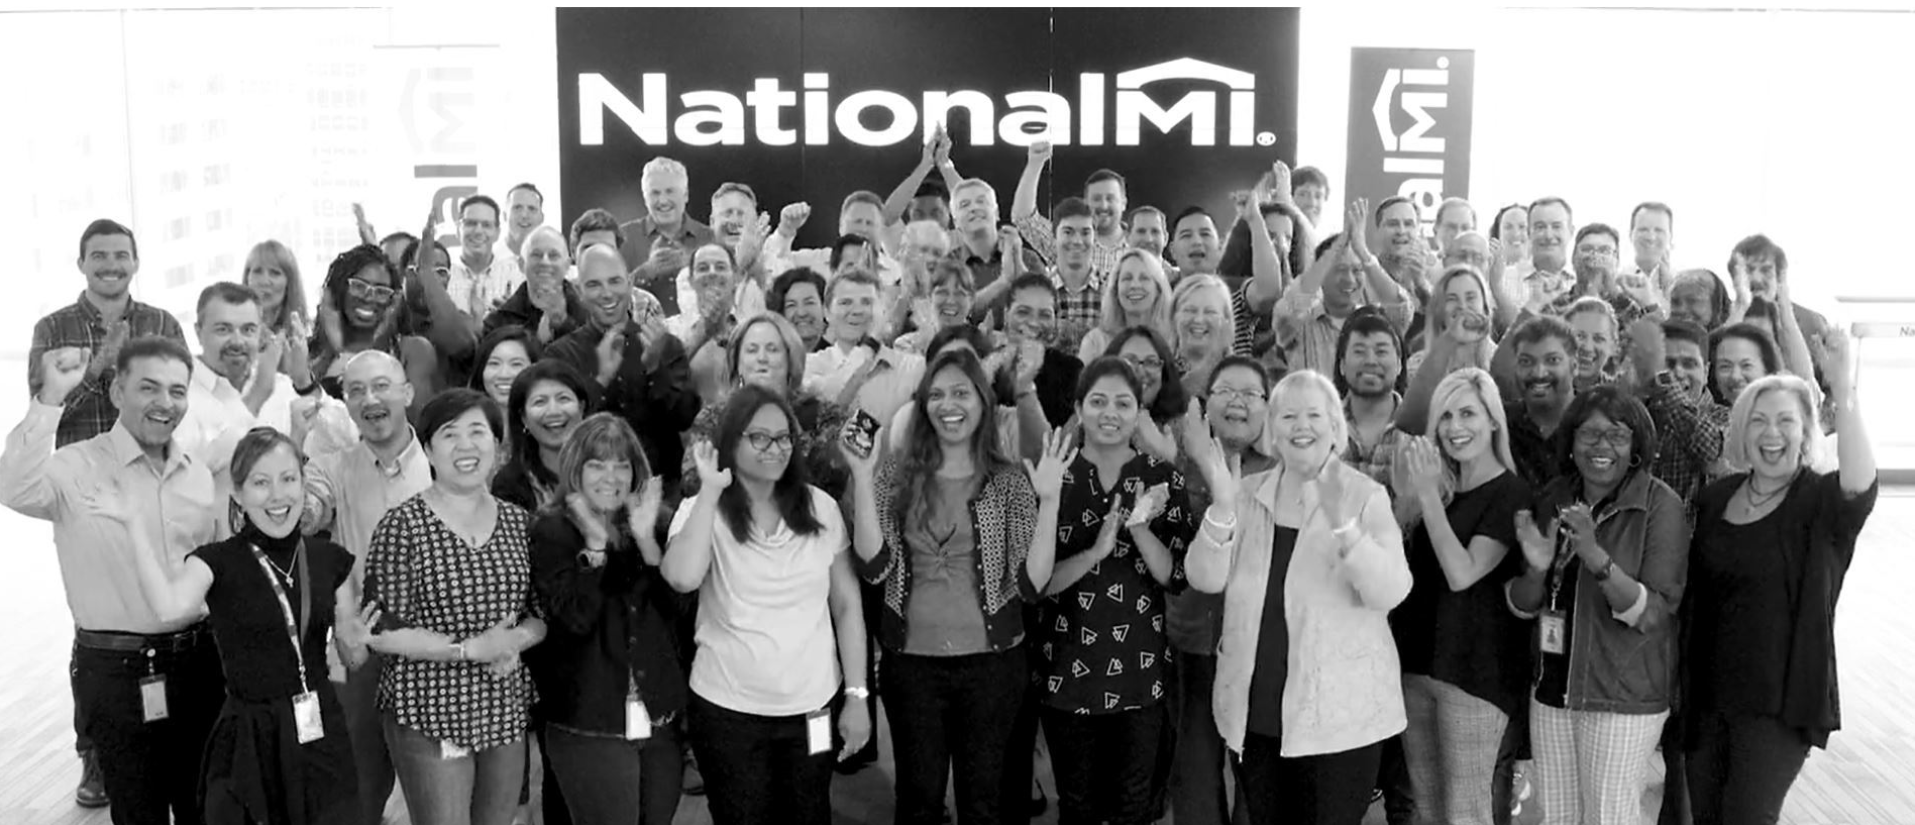 National MI Company Photo